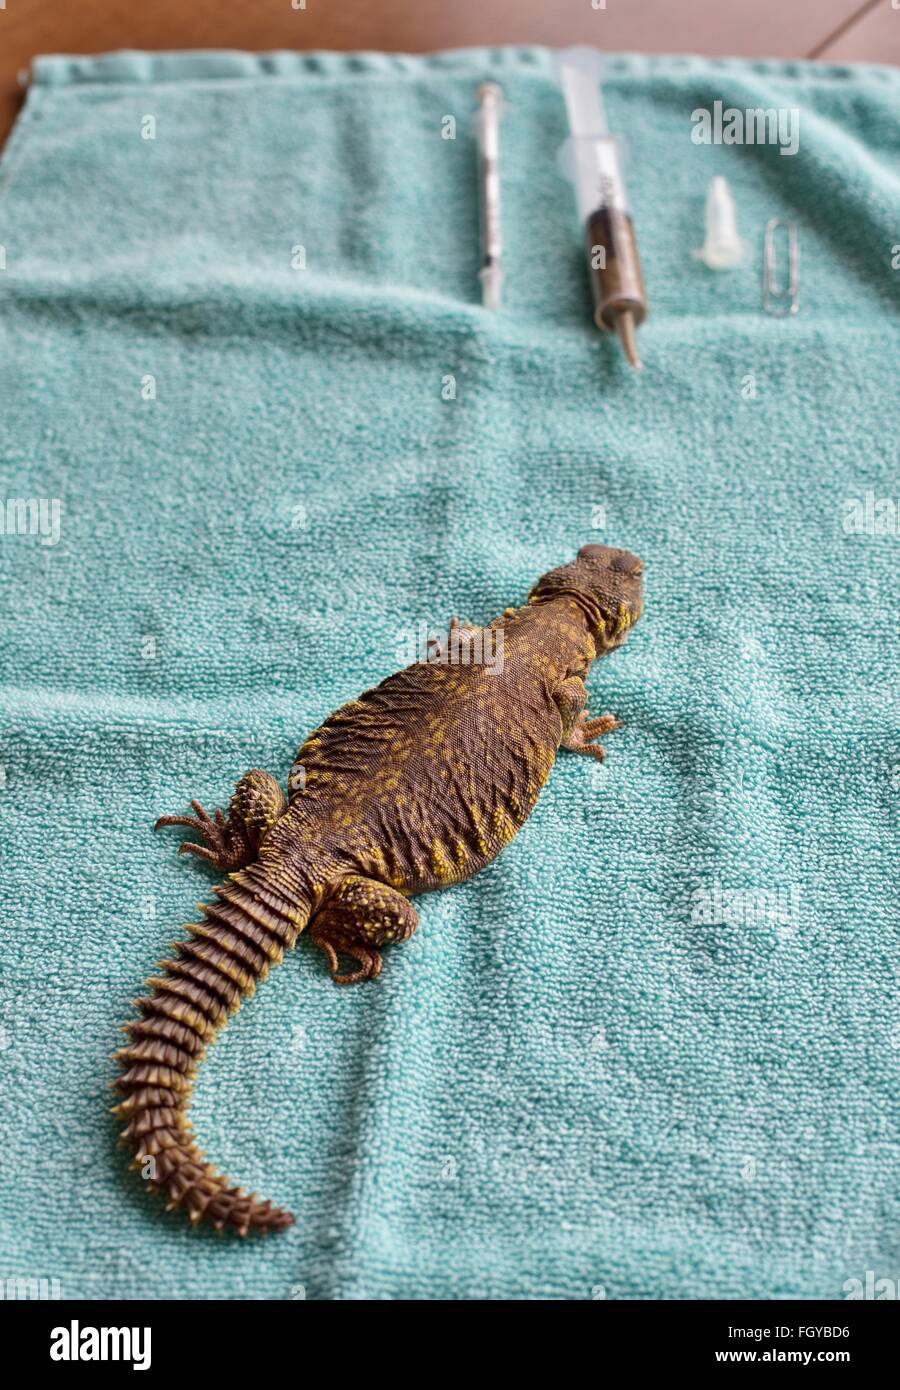 Un lagarto de cola espinosa de Uromastyx enfermo en una toalla, va a recibir tratamiento. Foto de stock